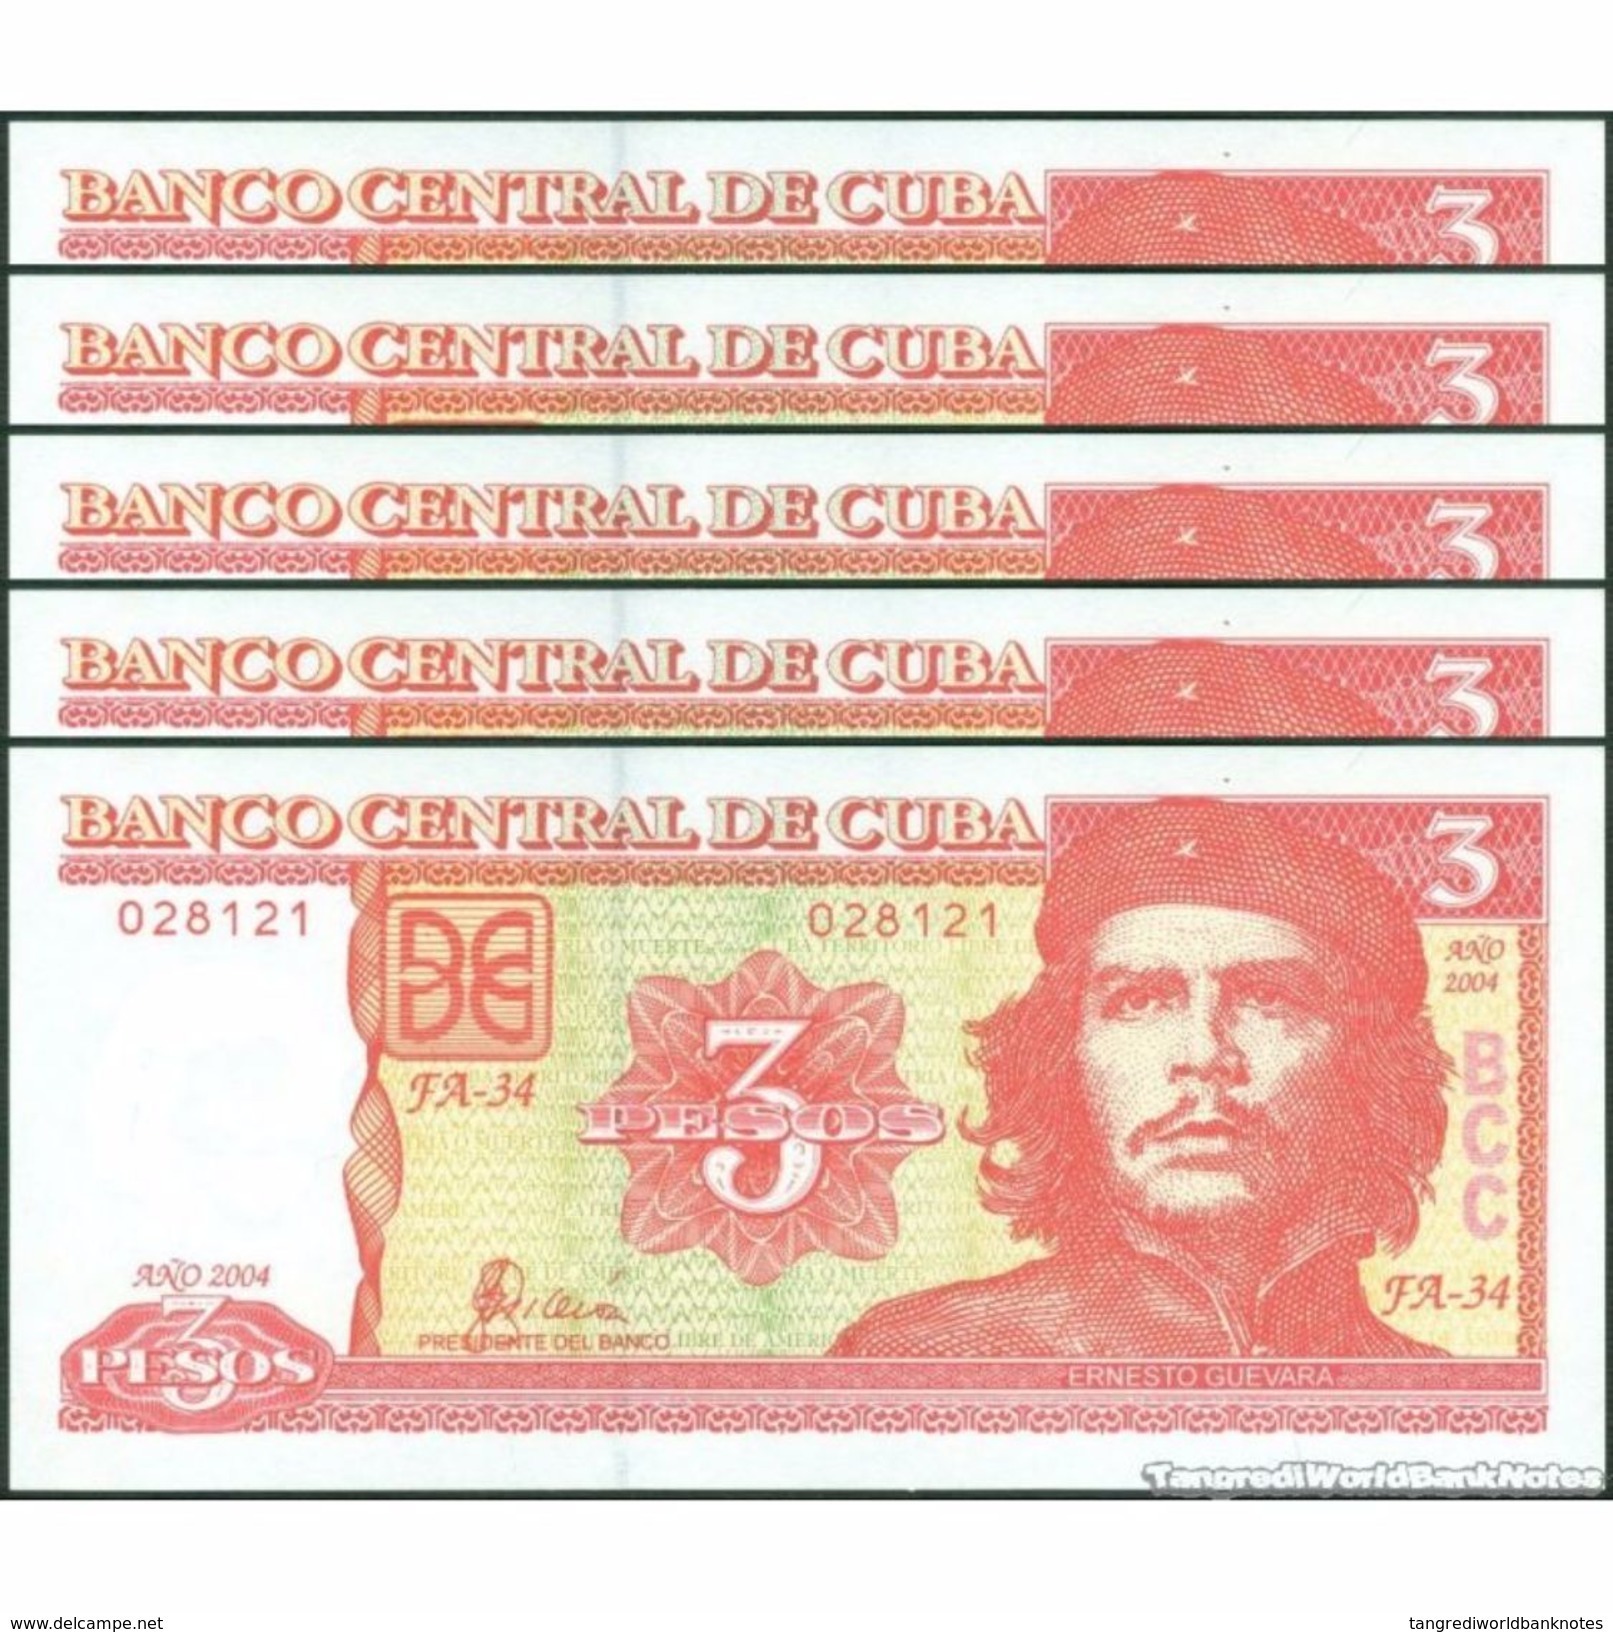 TWN - CUBA 127a - 3 Pesos 2004 DEALERS LOT X 5 - FA-34 UNC - Cuba